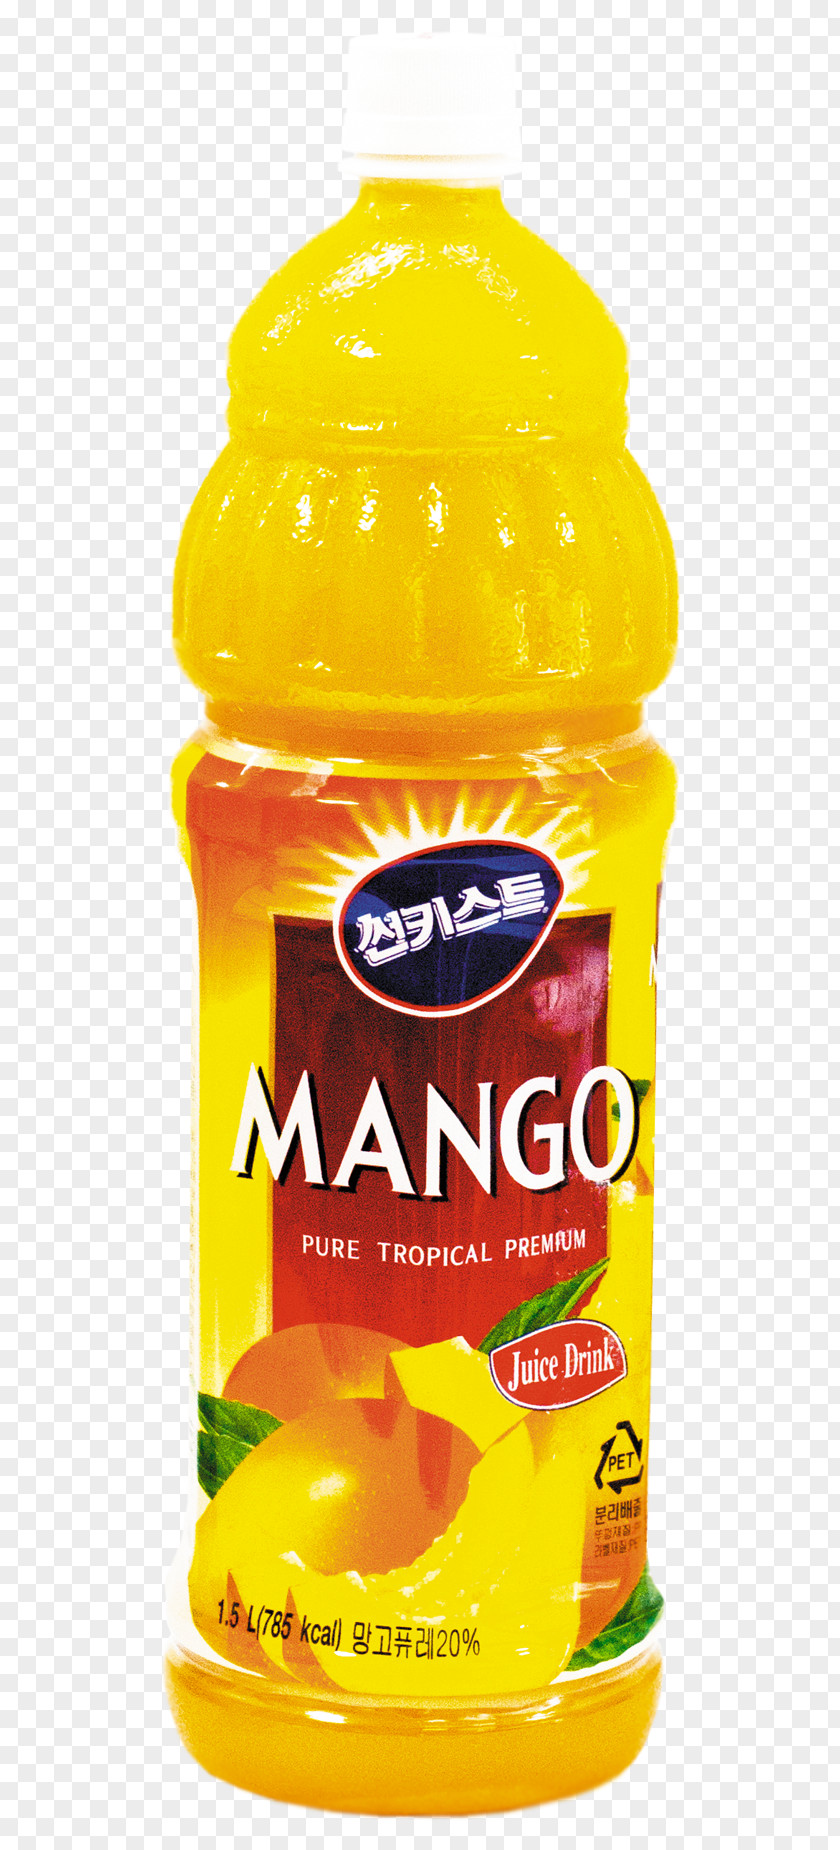 Mango Juice Orange Drink Citric Acid Fruit Flavor PNG